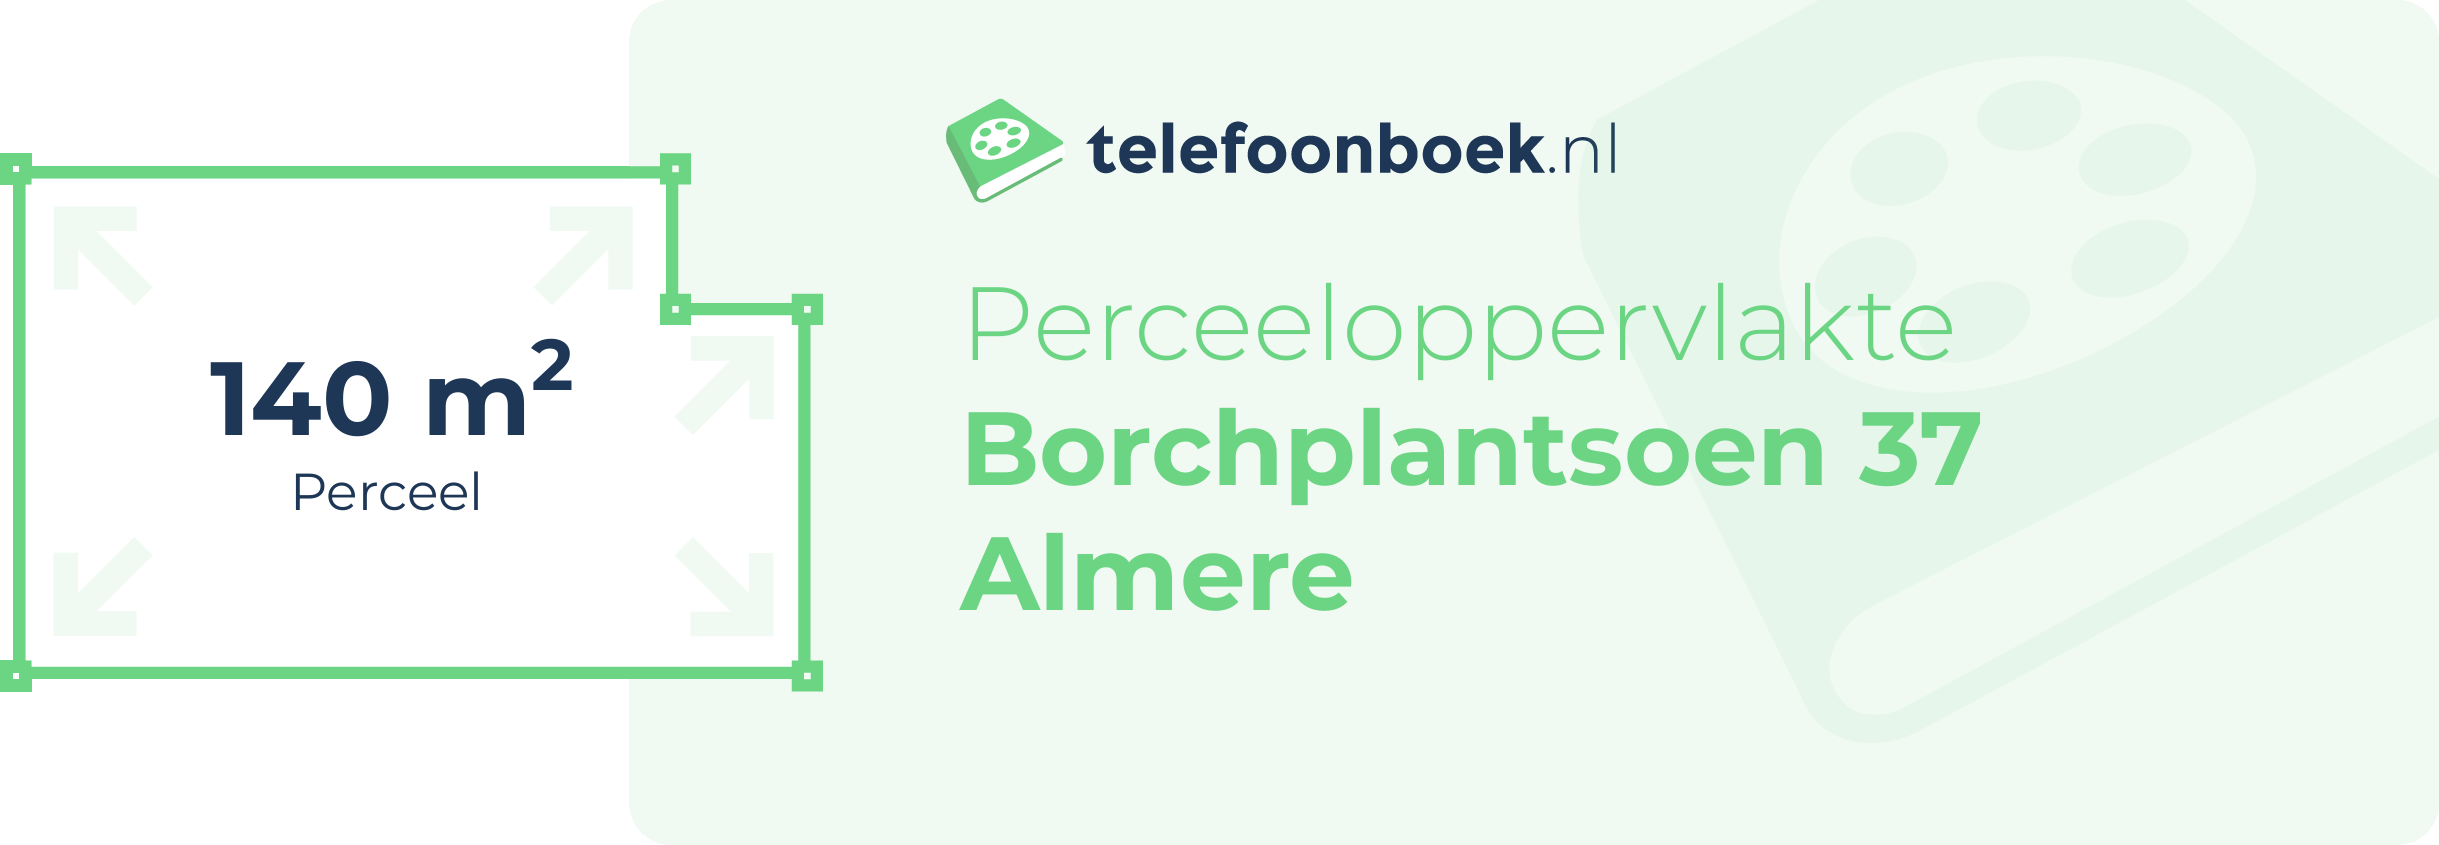 Perceeloppervlakte Borchplantsoen 37 Almere